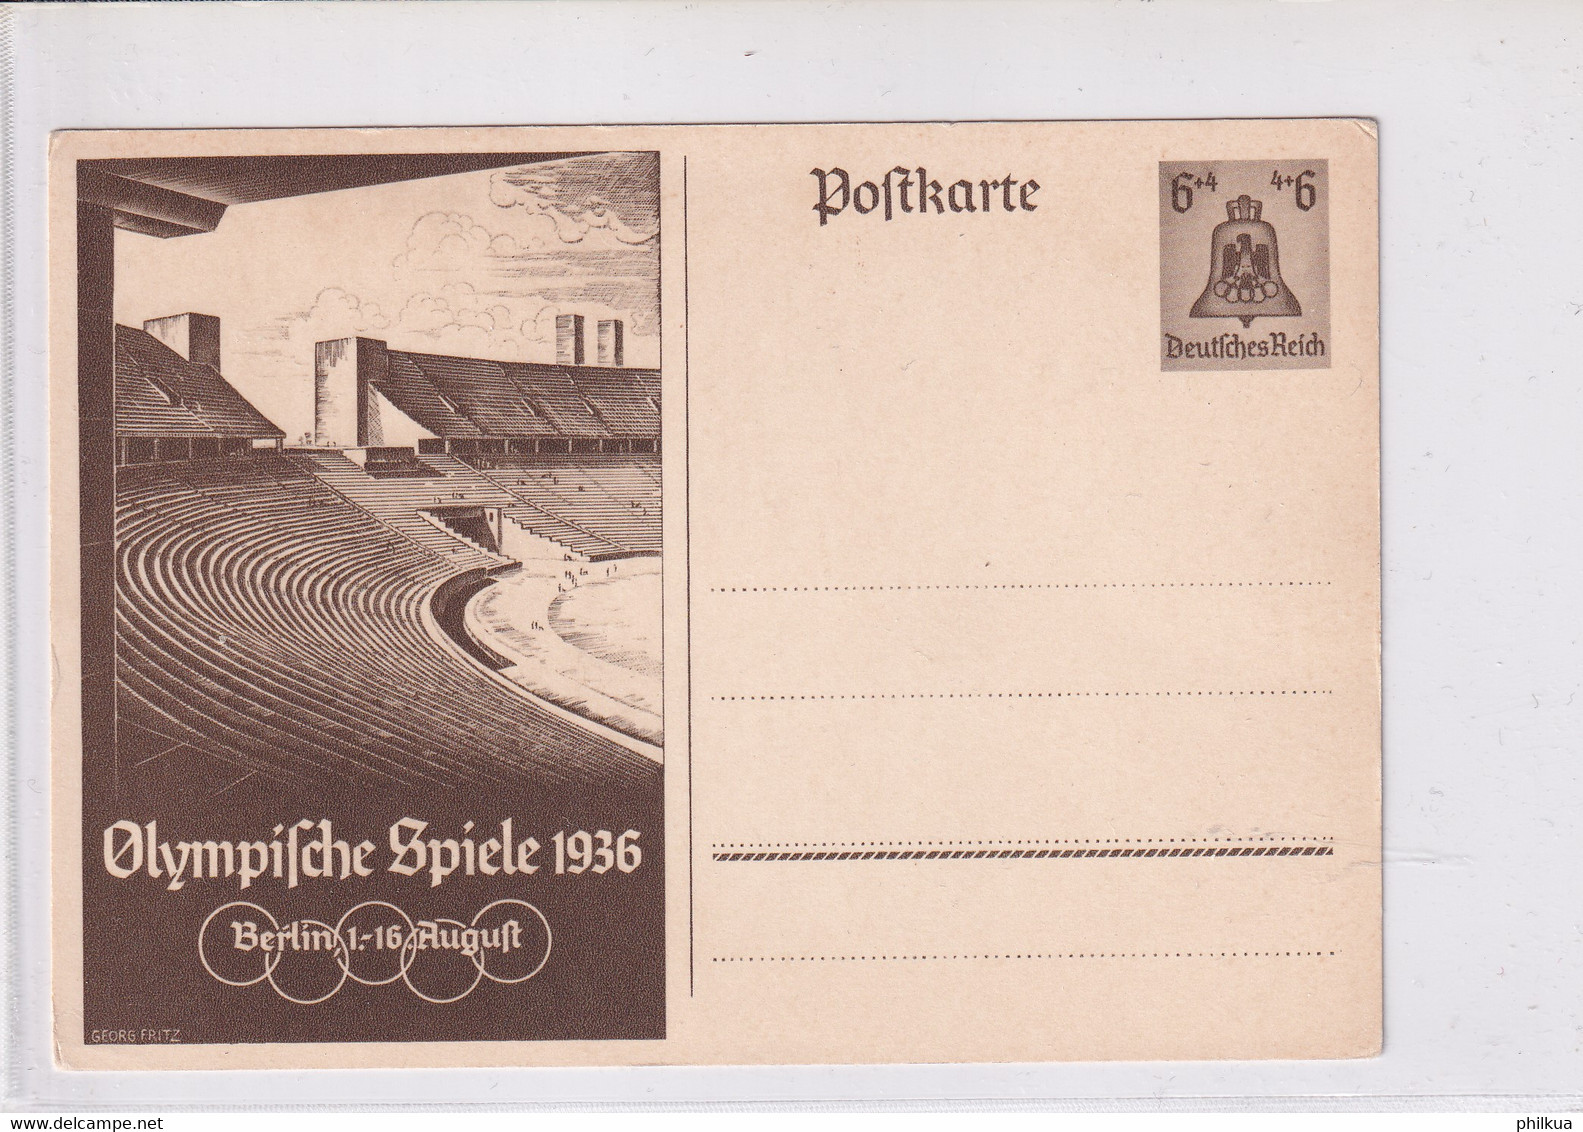 Postkarte - Deutsches Reich - Olympische Spiele 1936 Berlin 1.-16. August - Ete 1936: Berlin